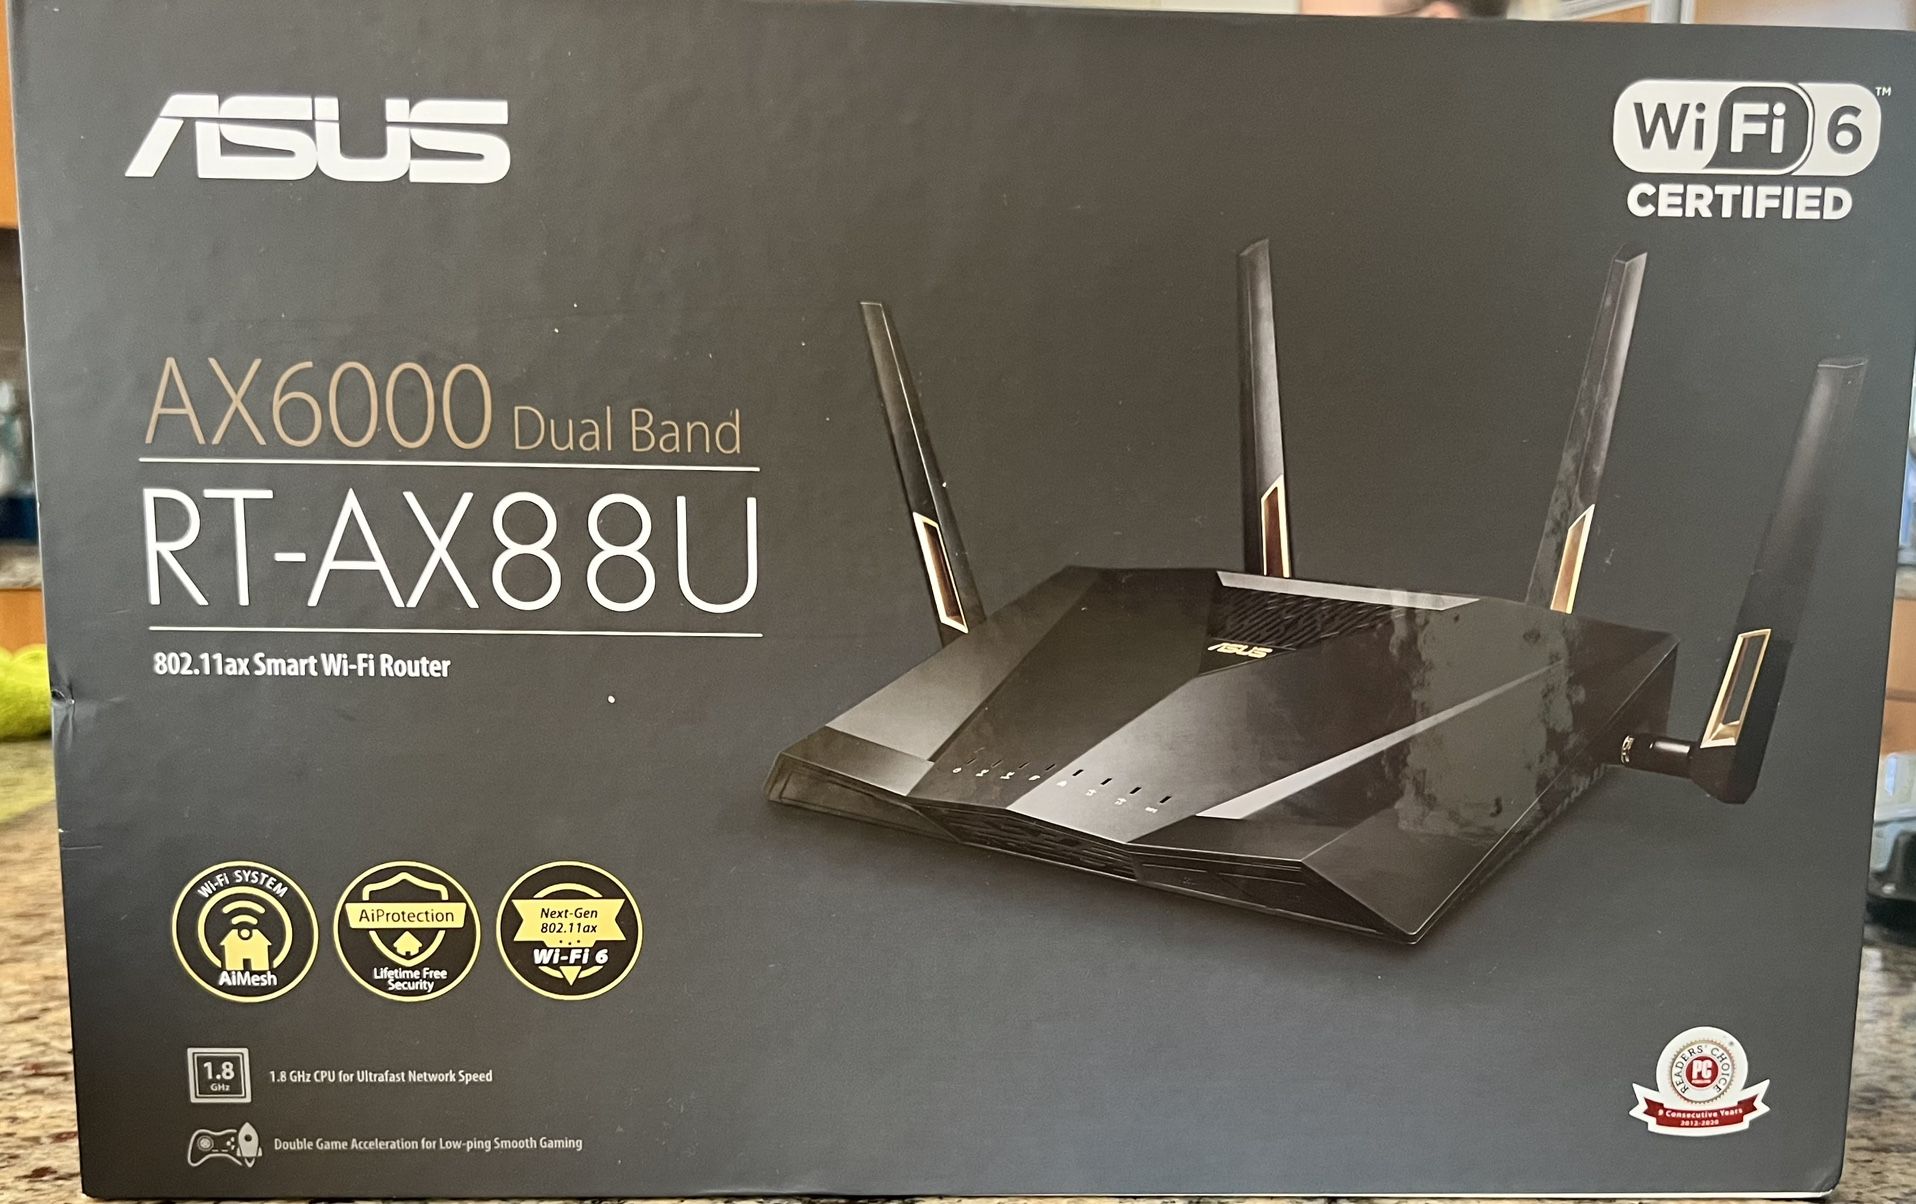 ASUS AX6000 Dual Band RT—Ax88U 802.11ax Smart Wi-Fi Router